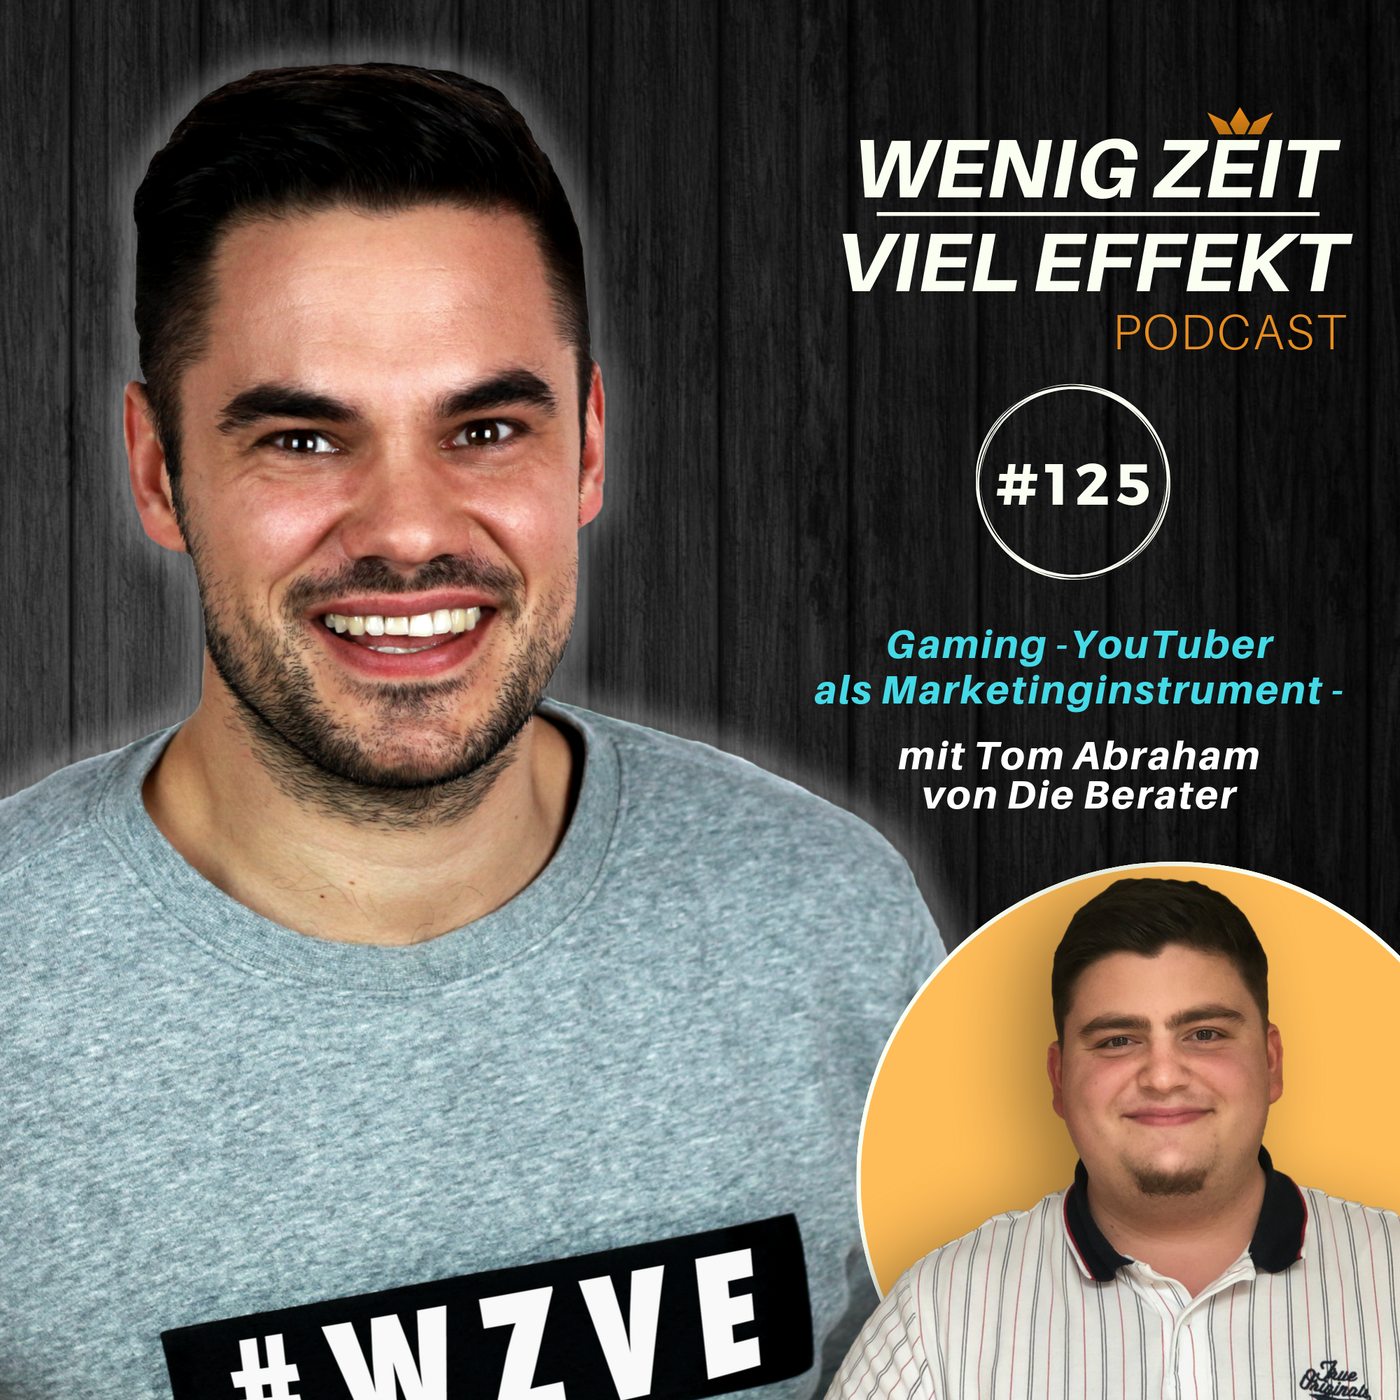 Gaming-YouTuber als Marketinginstrument - mit Tom Abraham von Die Berater | WZVE #125